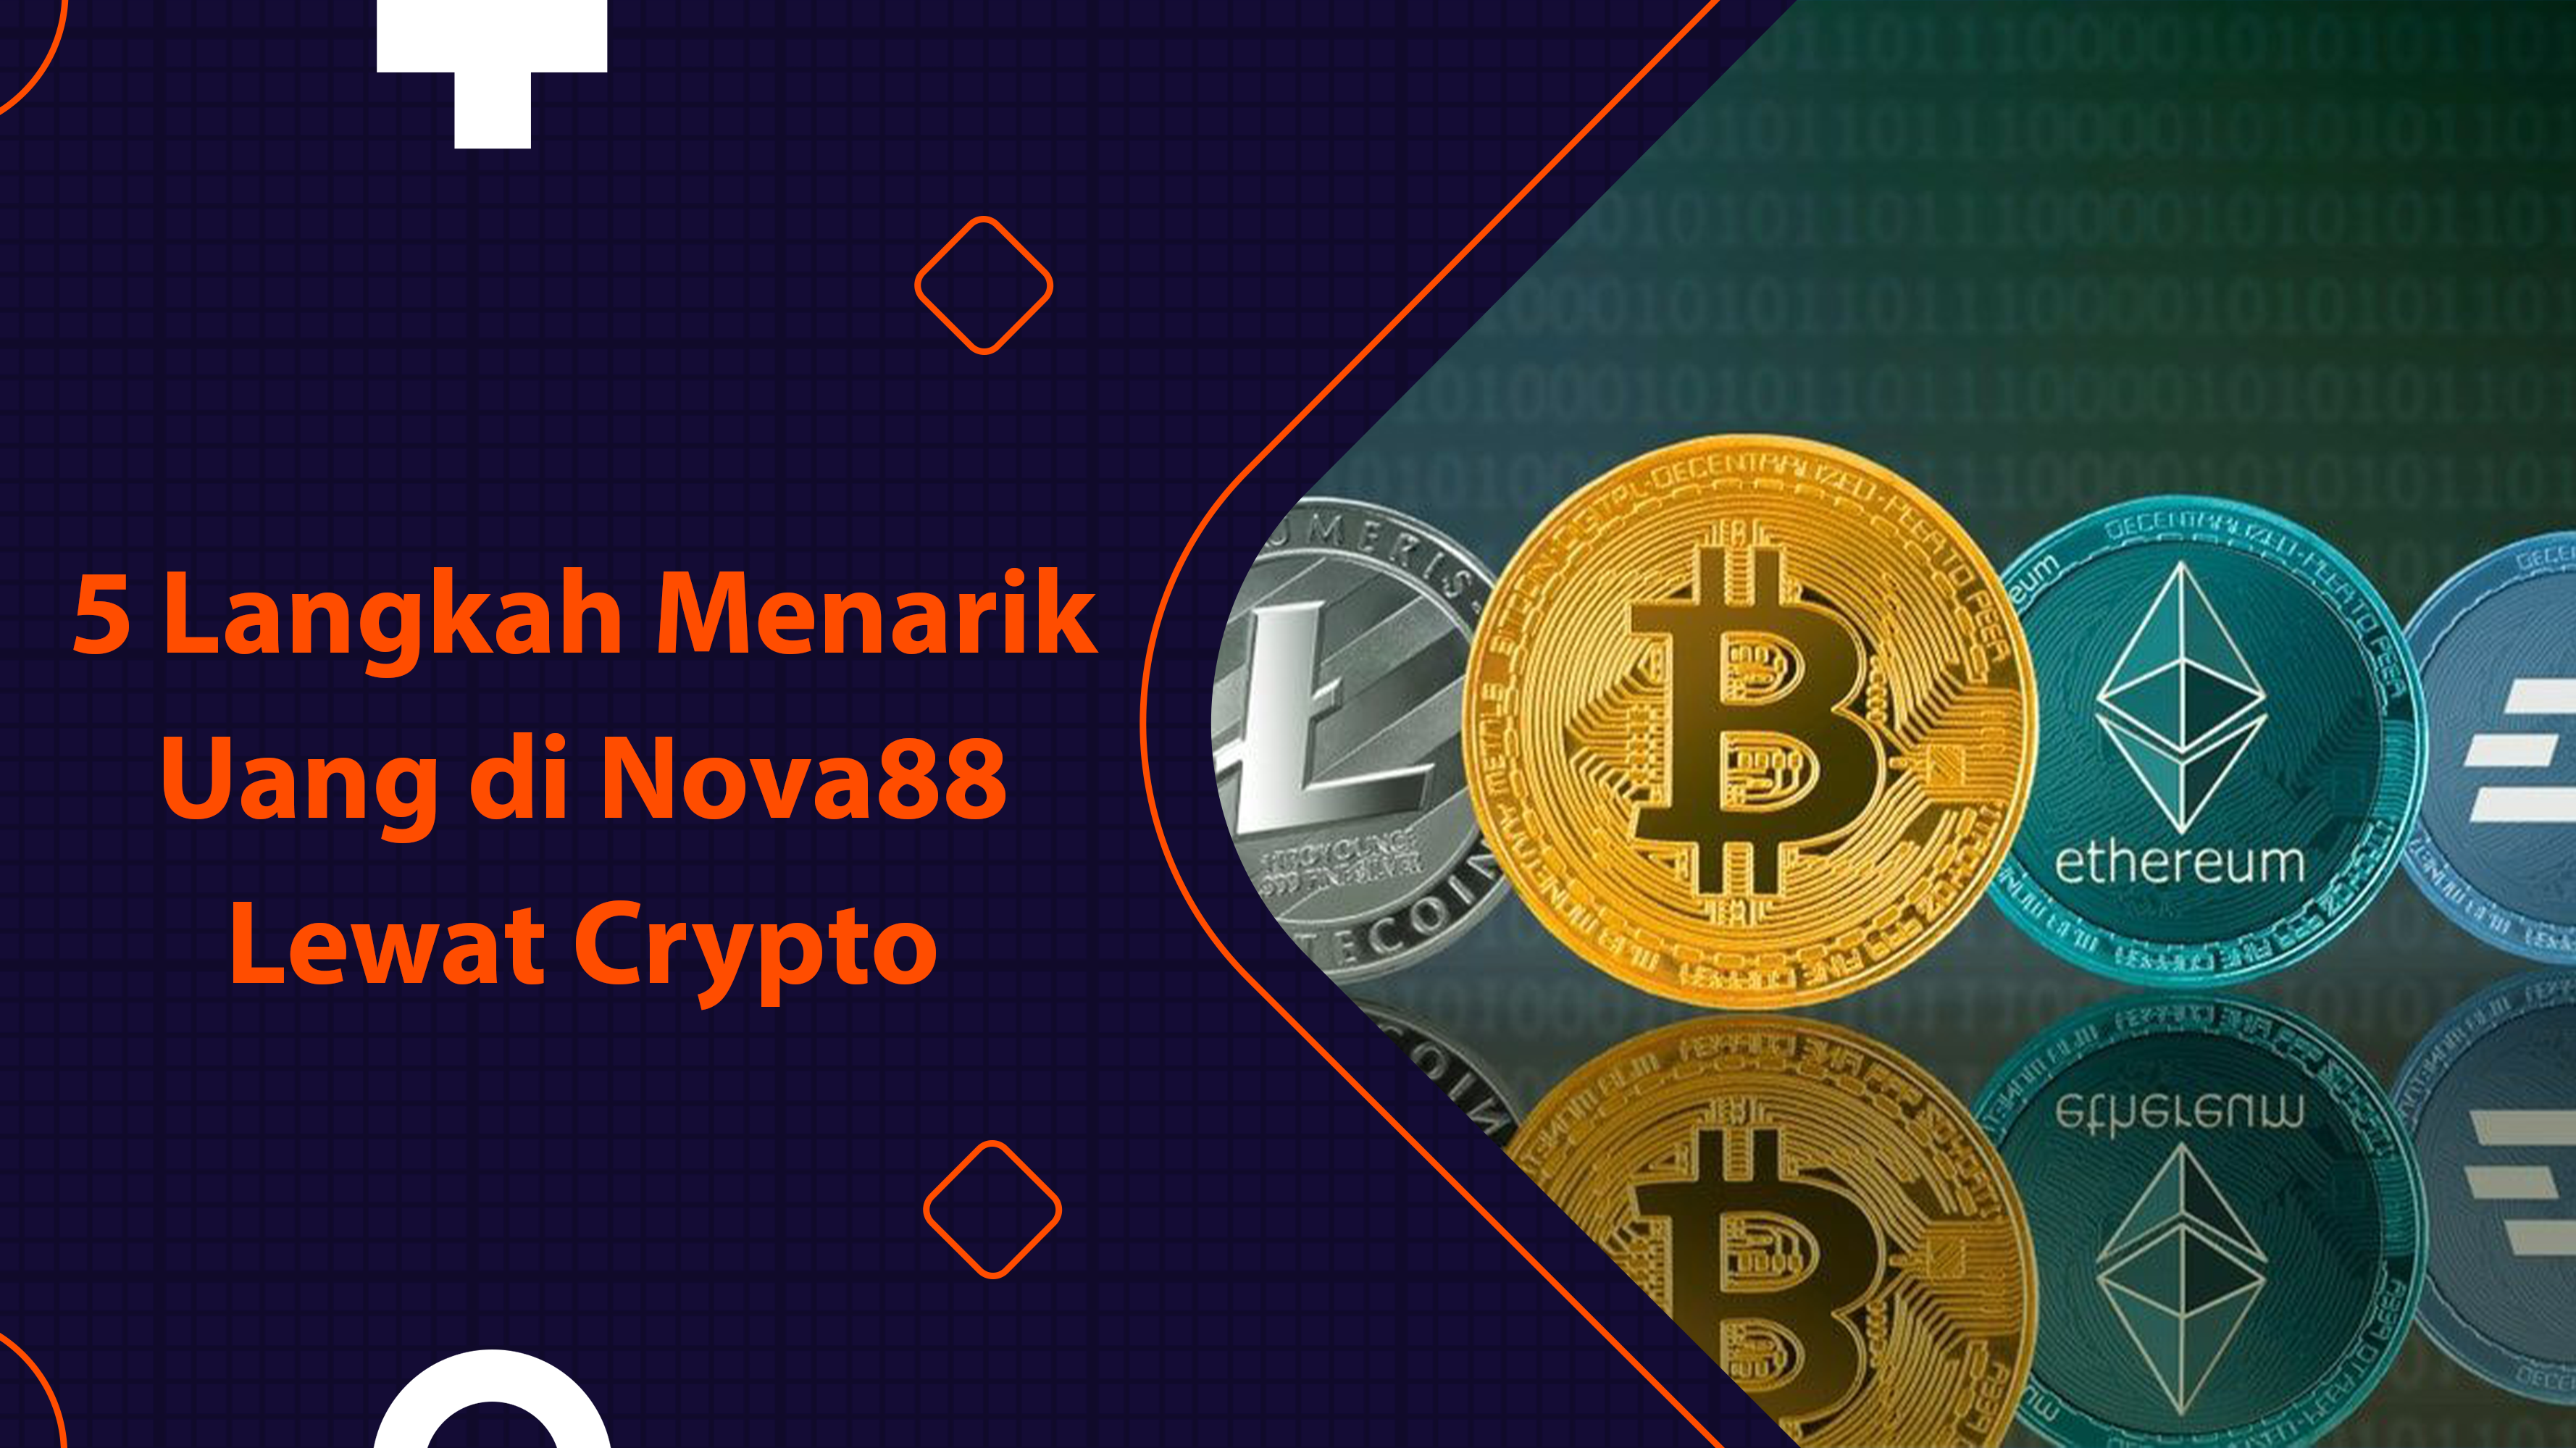 5 Langkah Menarik Uang di Nova88 Lewat Crypto